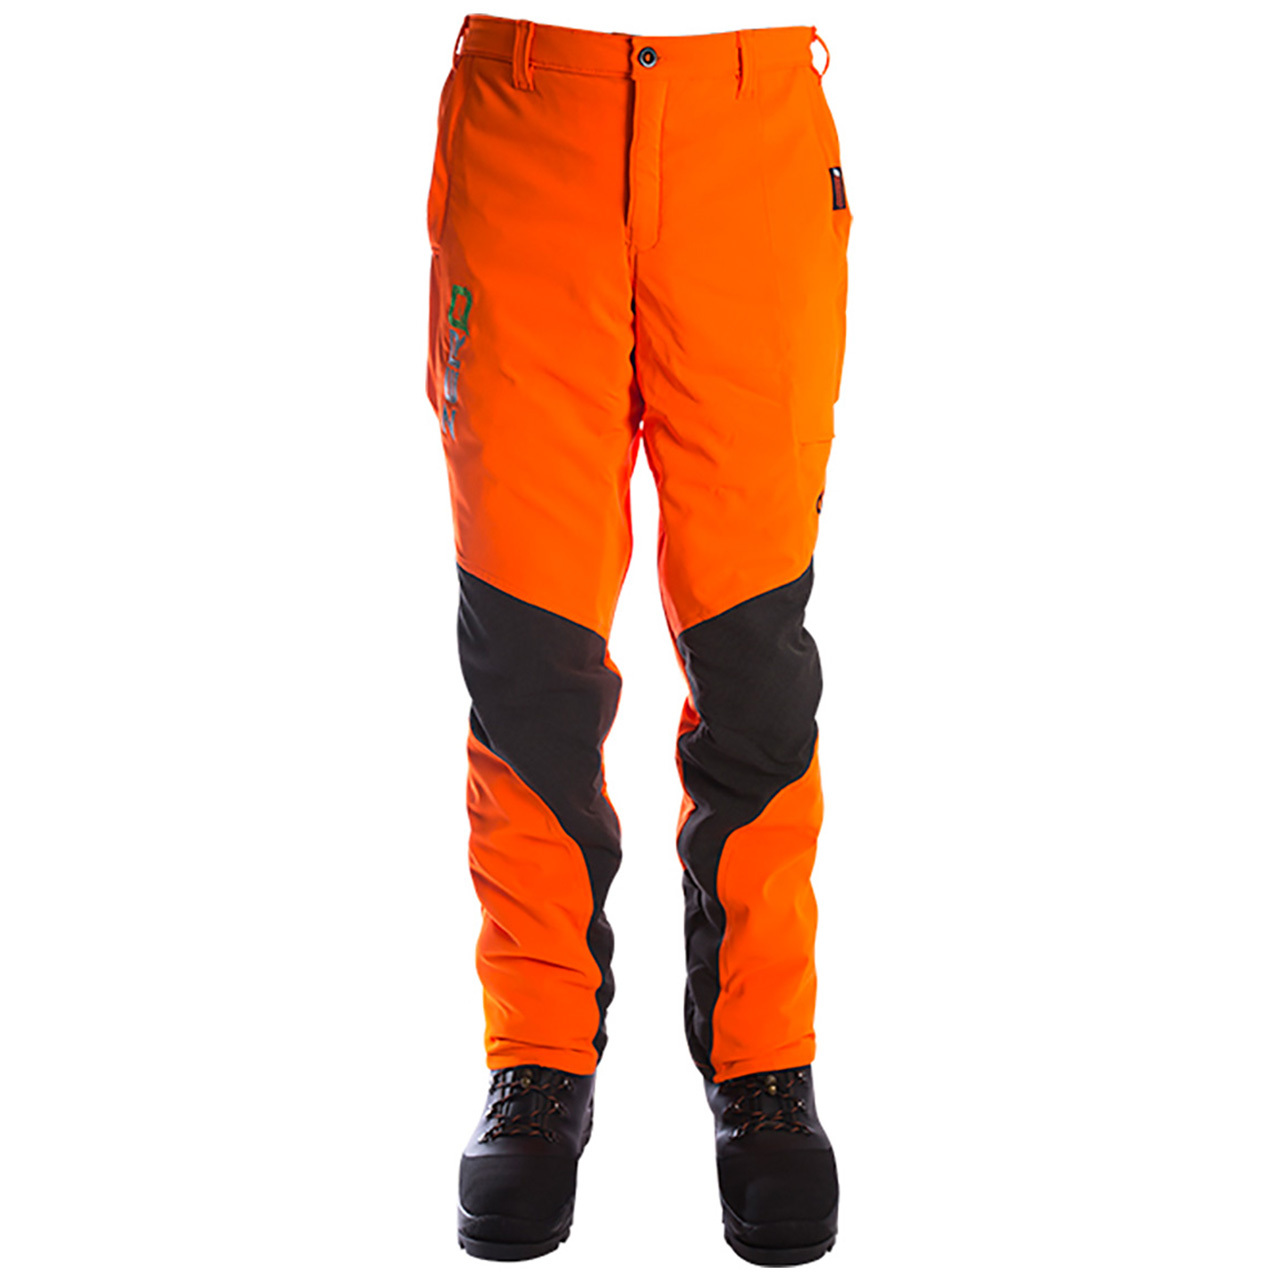 Clogger Zero Gen2 Light & Cool Men's Chainsaw Pants - Hi Vis Orange